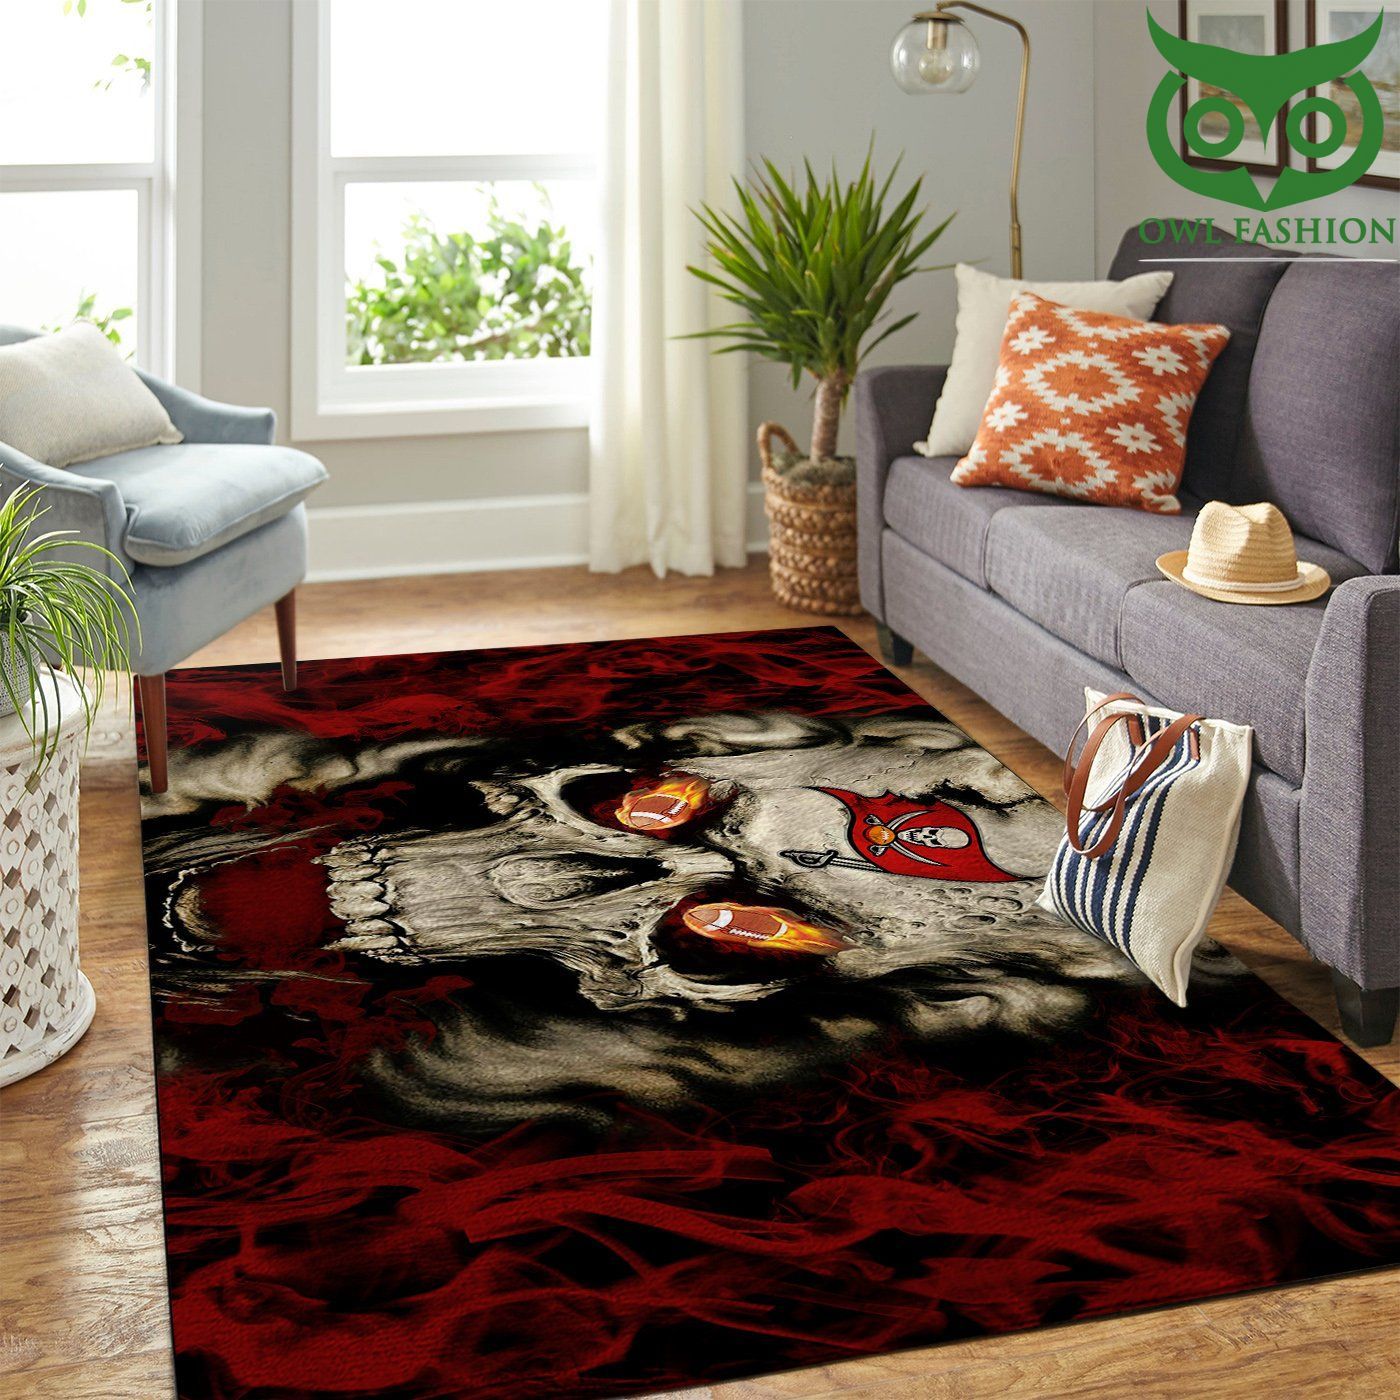 Tampa Bay Buccaneers Nfl Team Logo Skull Style Nice room decorate floor carpet rug 